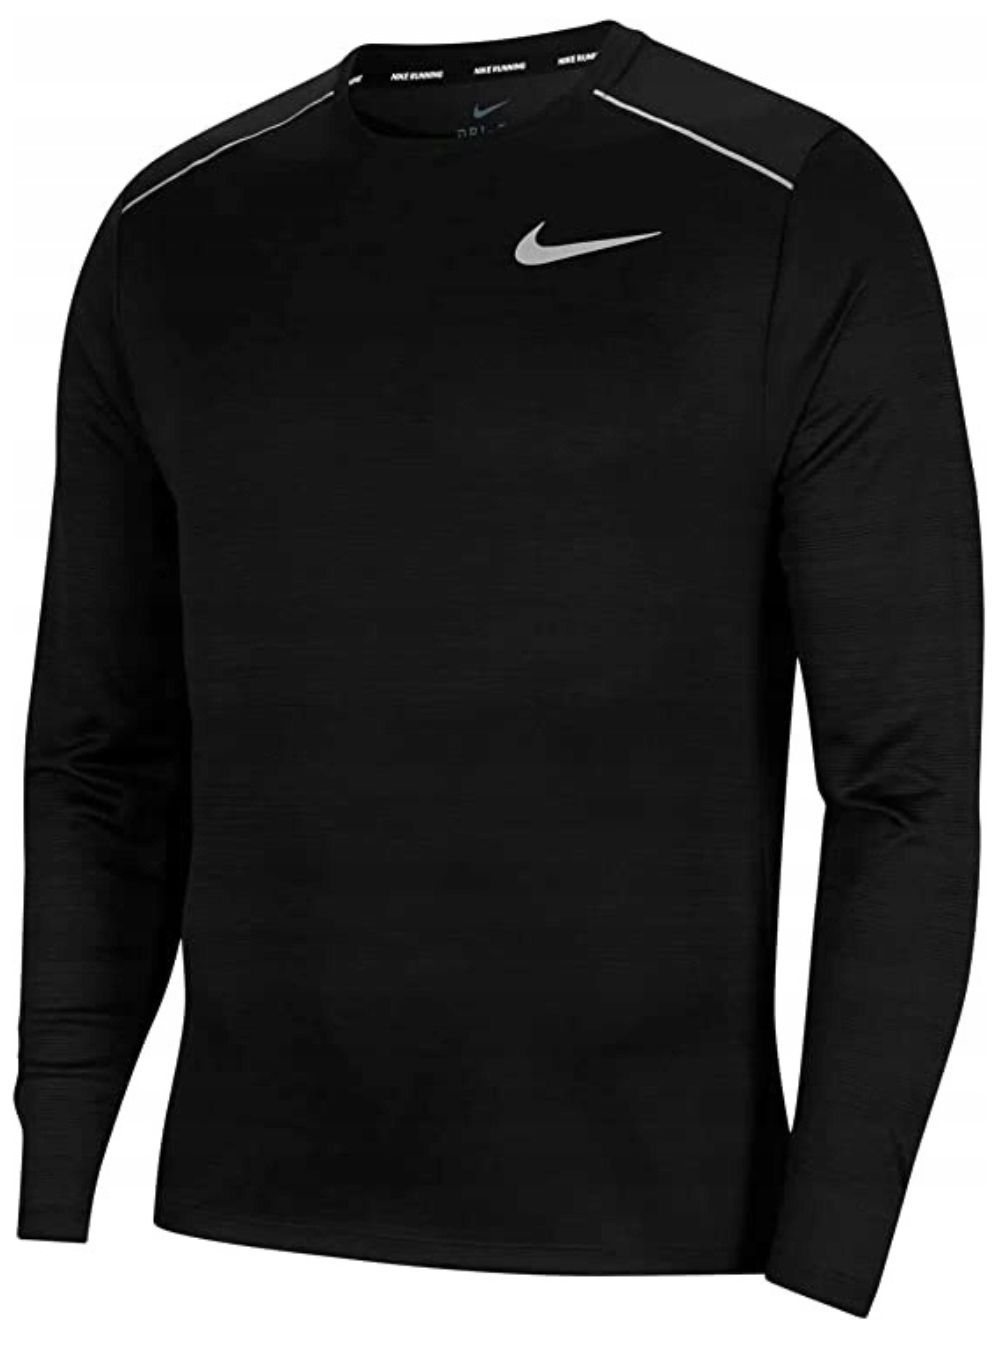 чоловіча спортивна футболка Nike Long Sleeve R. L з довгим рукавом